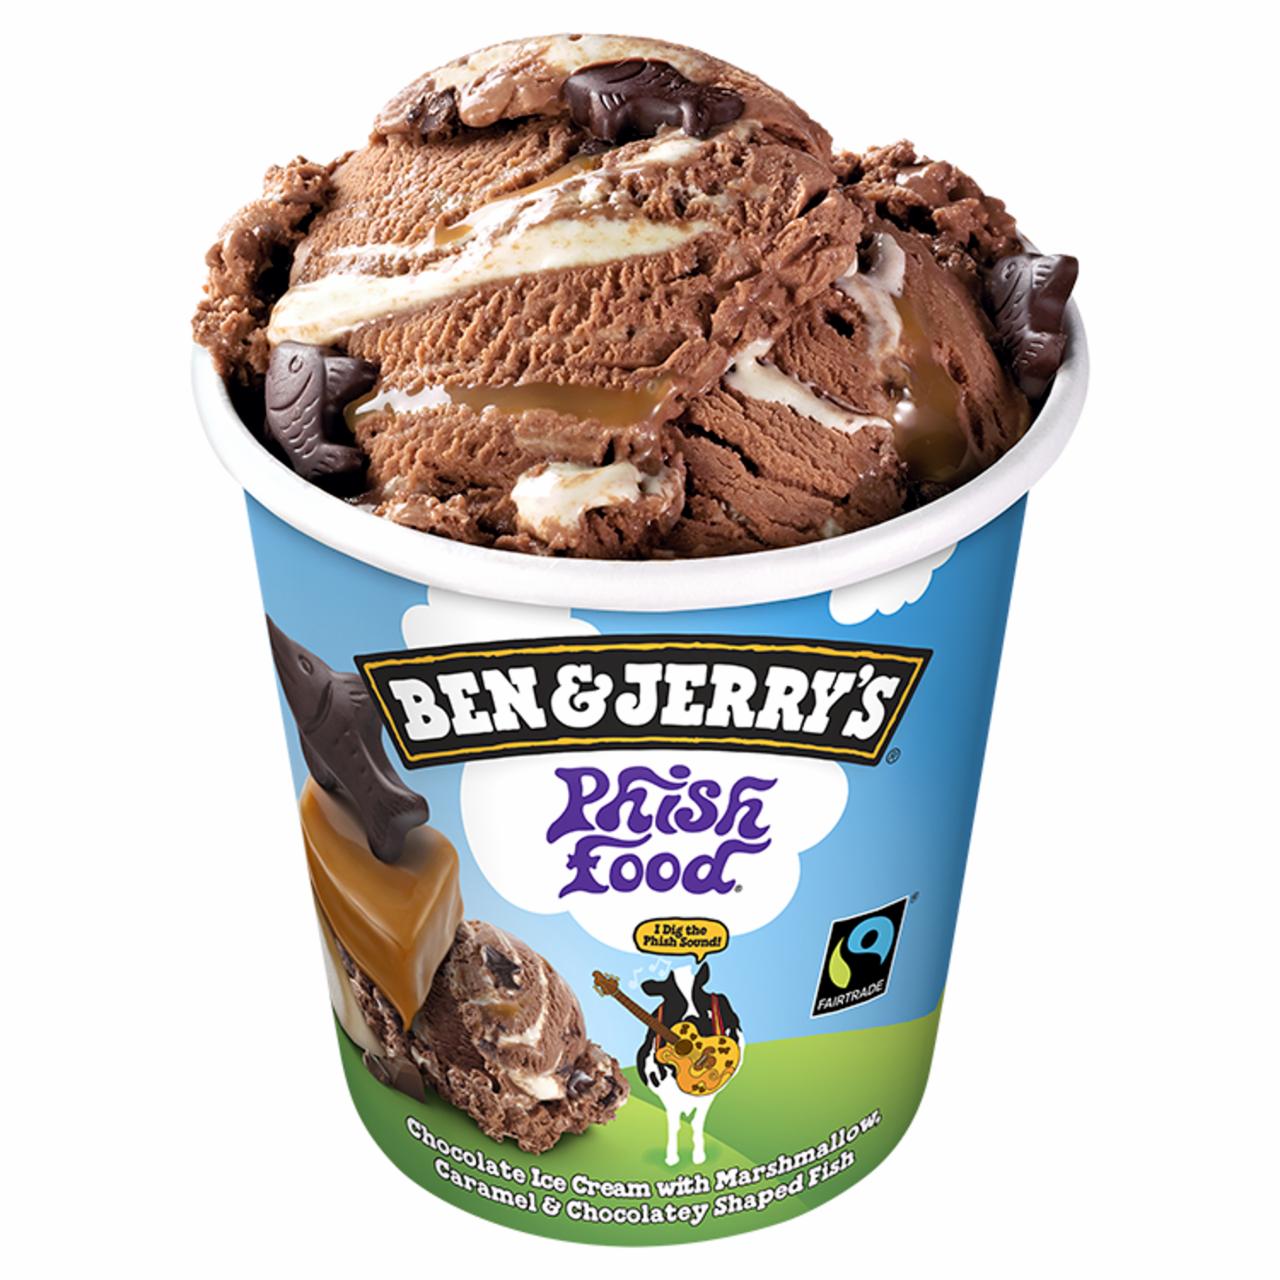 Képek - Ben & Jerry's Phish Food jégkrém 500 ml